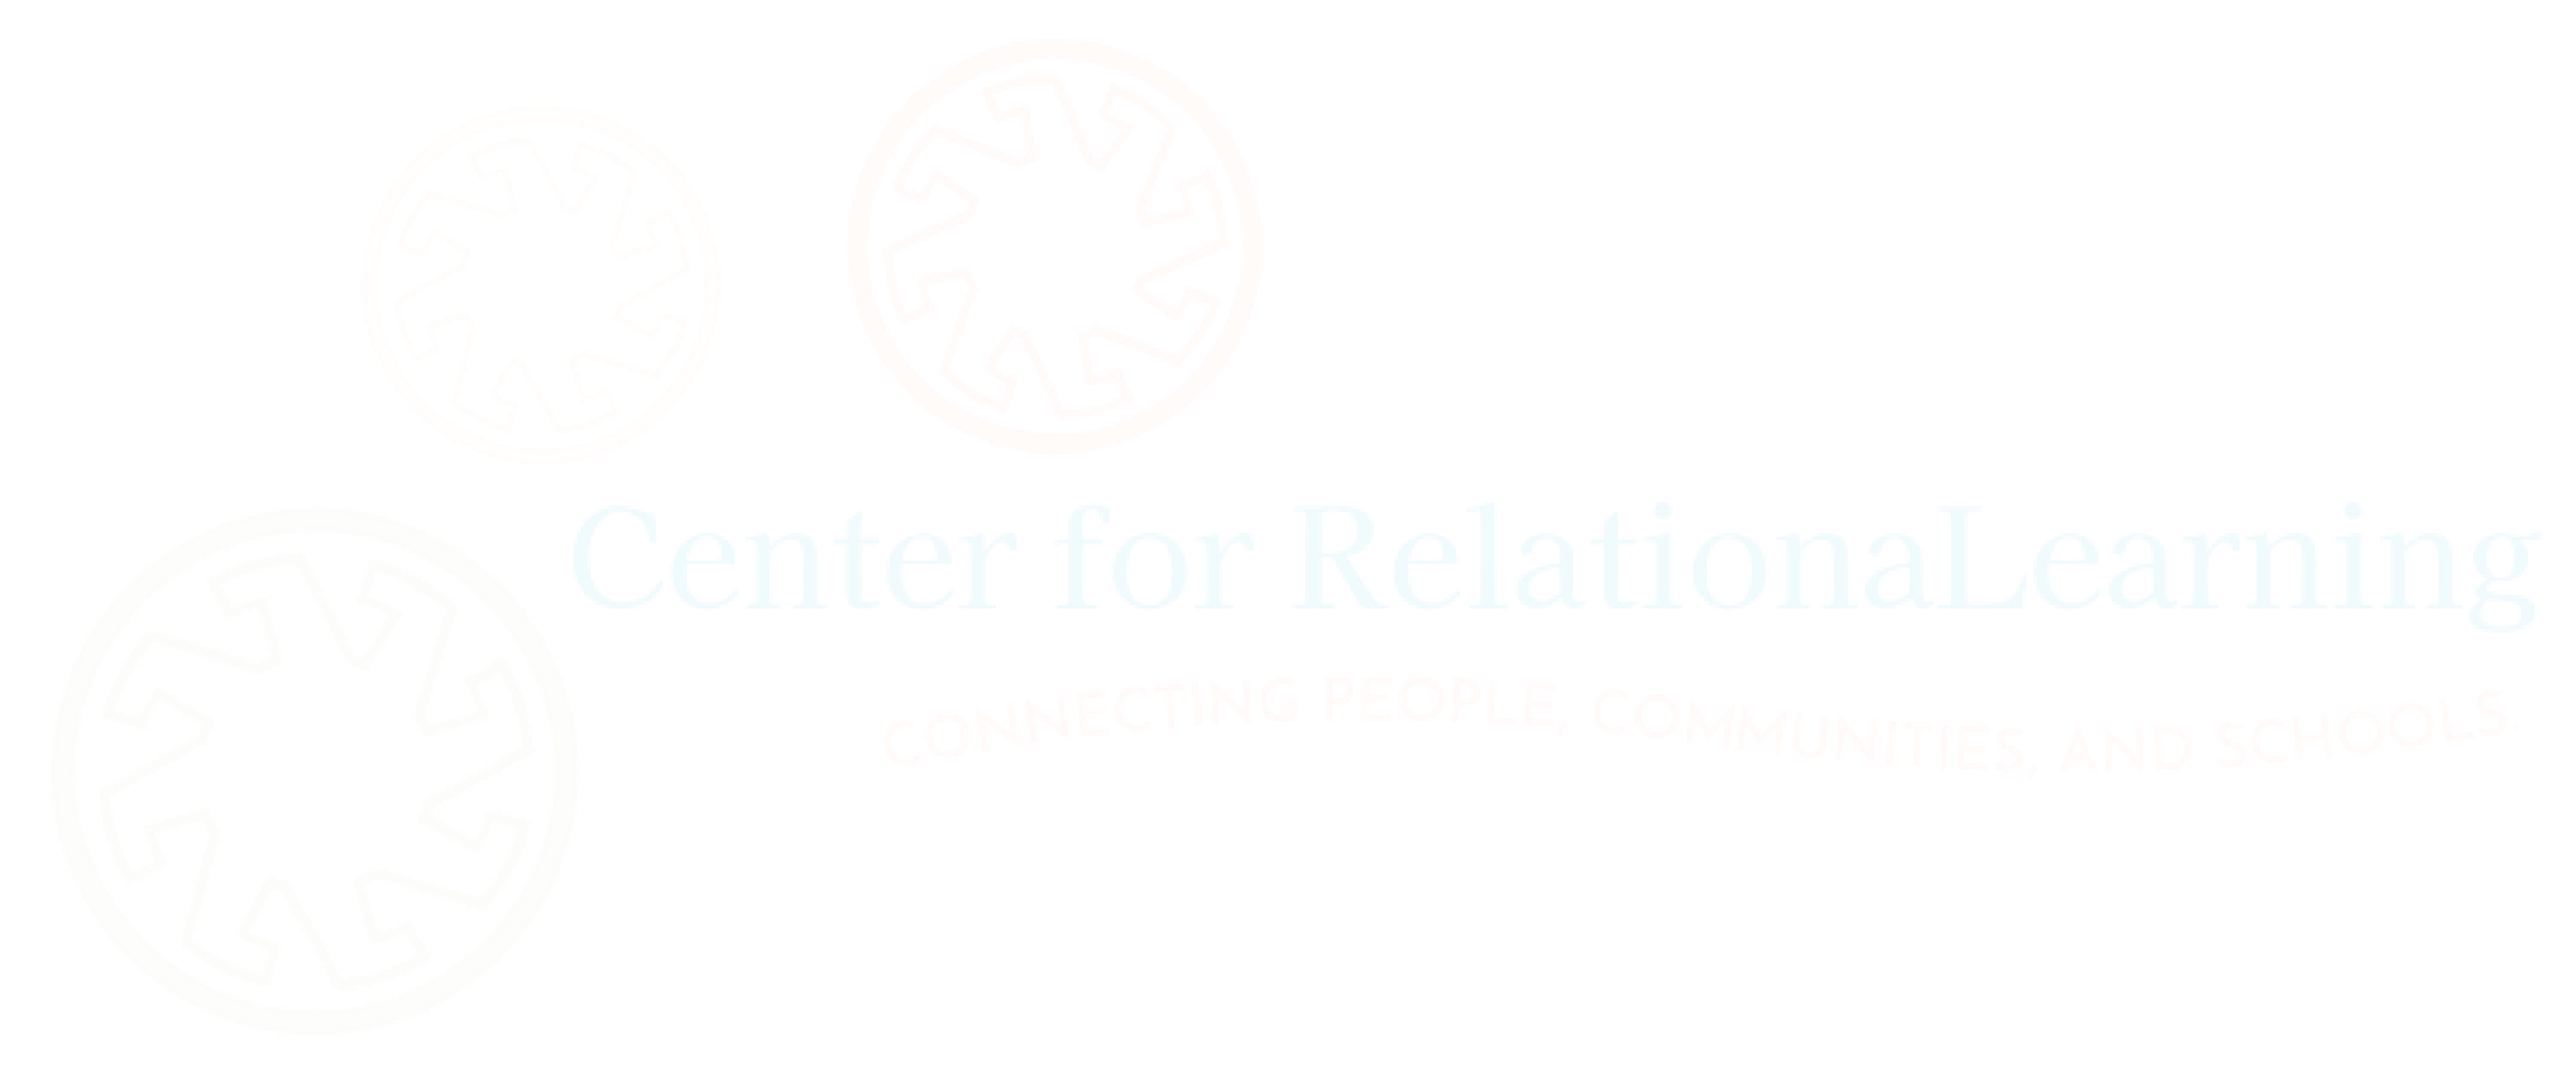 Center for RelationaLearning Logo